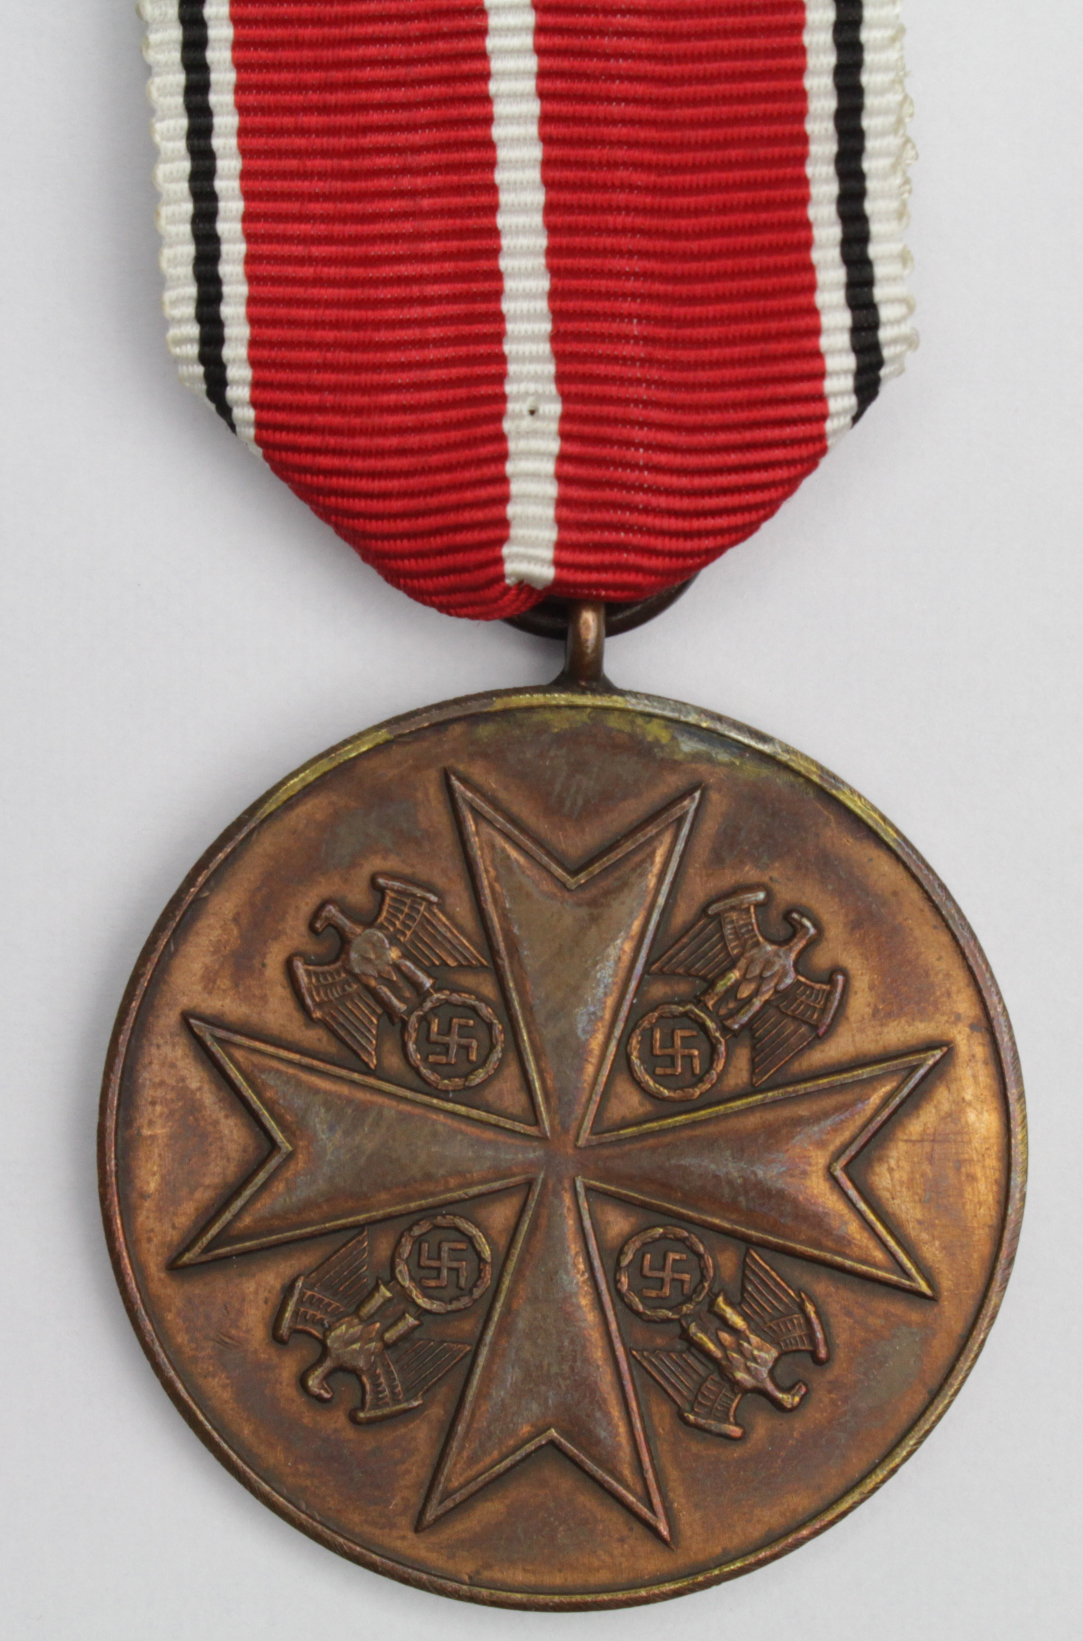 German Eagle Order medal, bronze